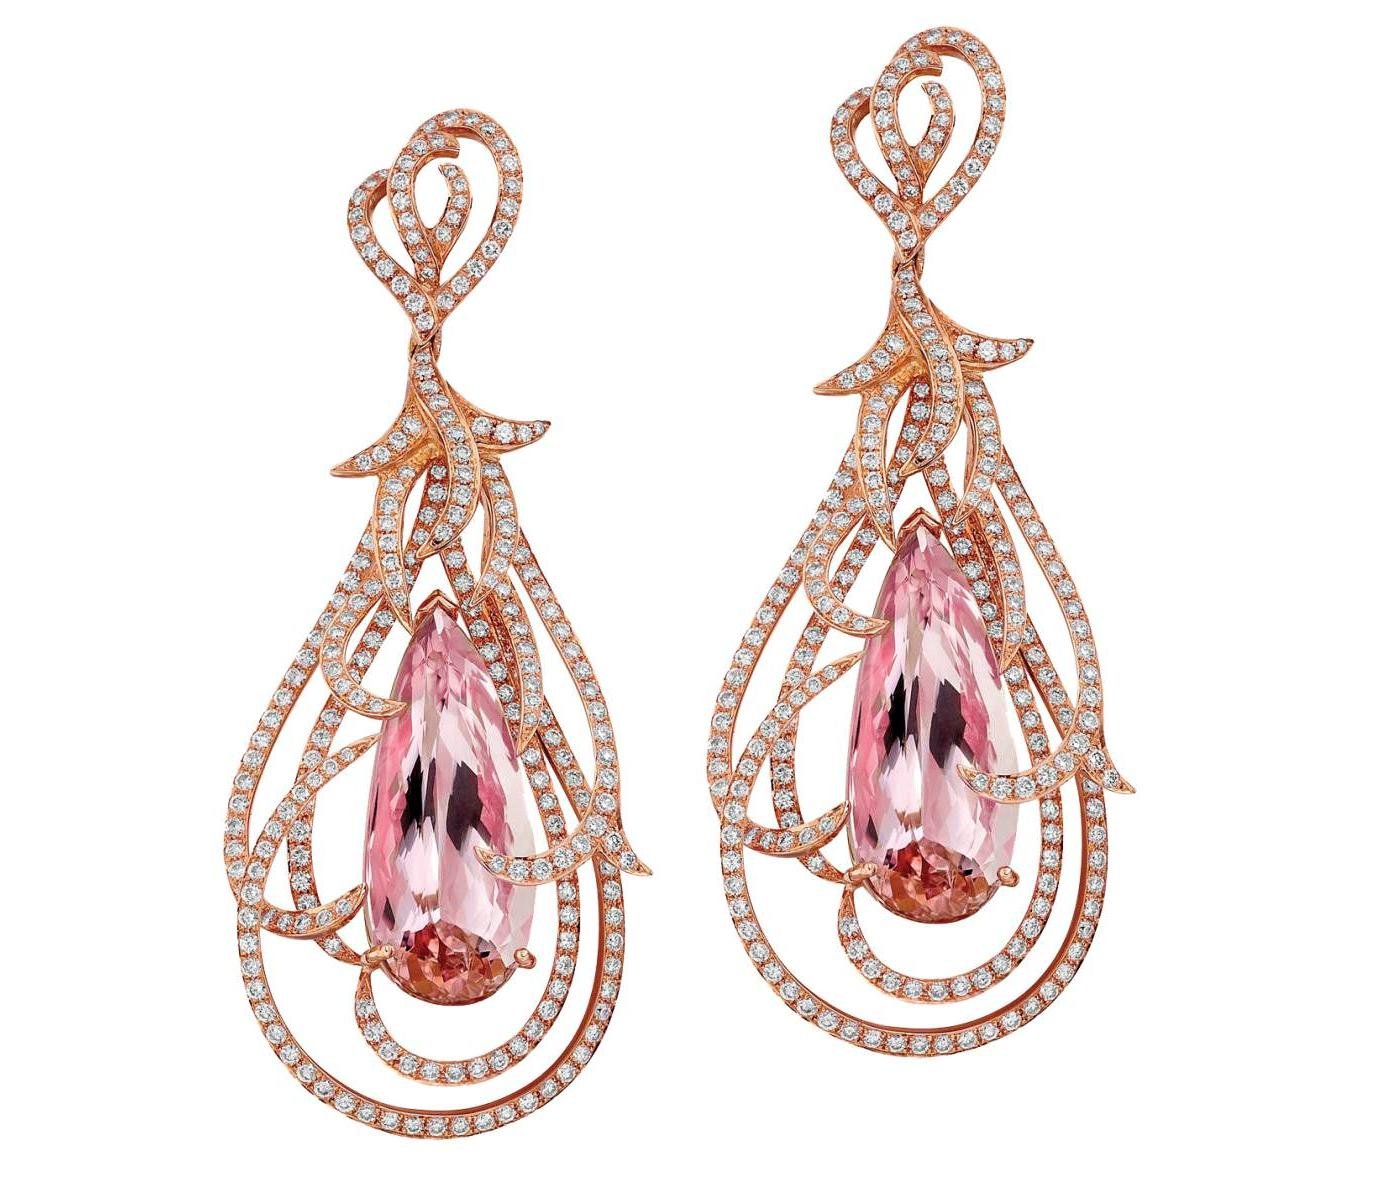 Earrings by Azuelos Jewellery